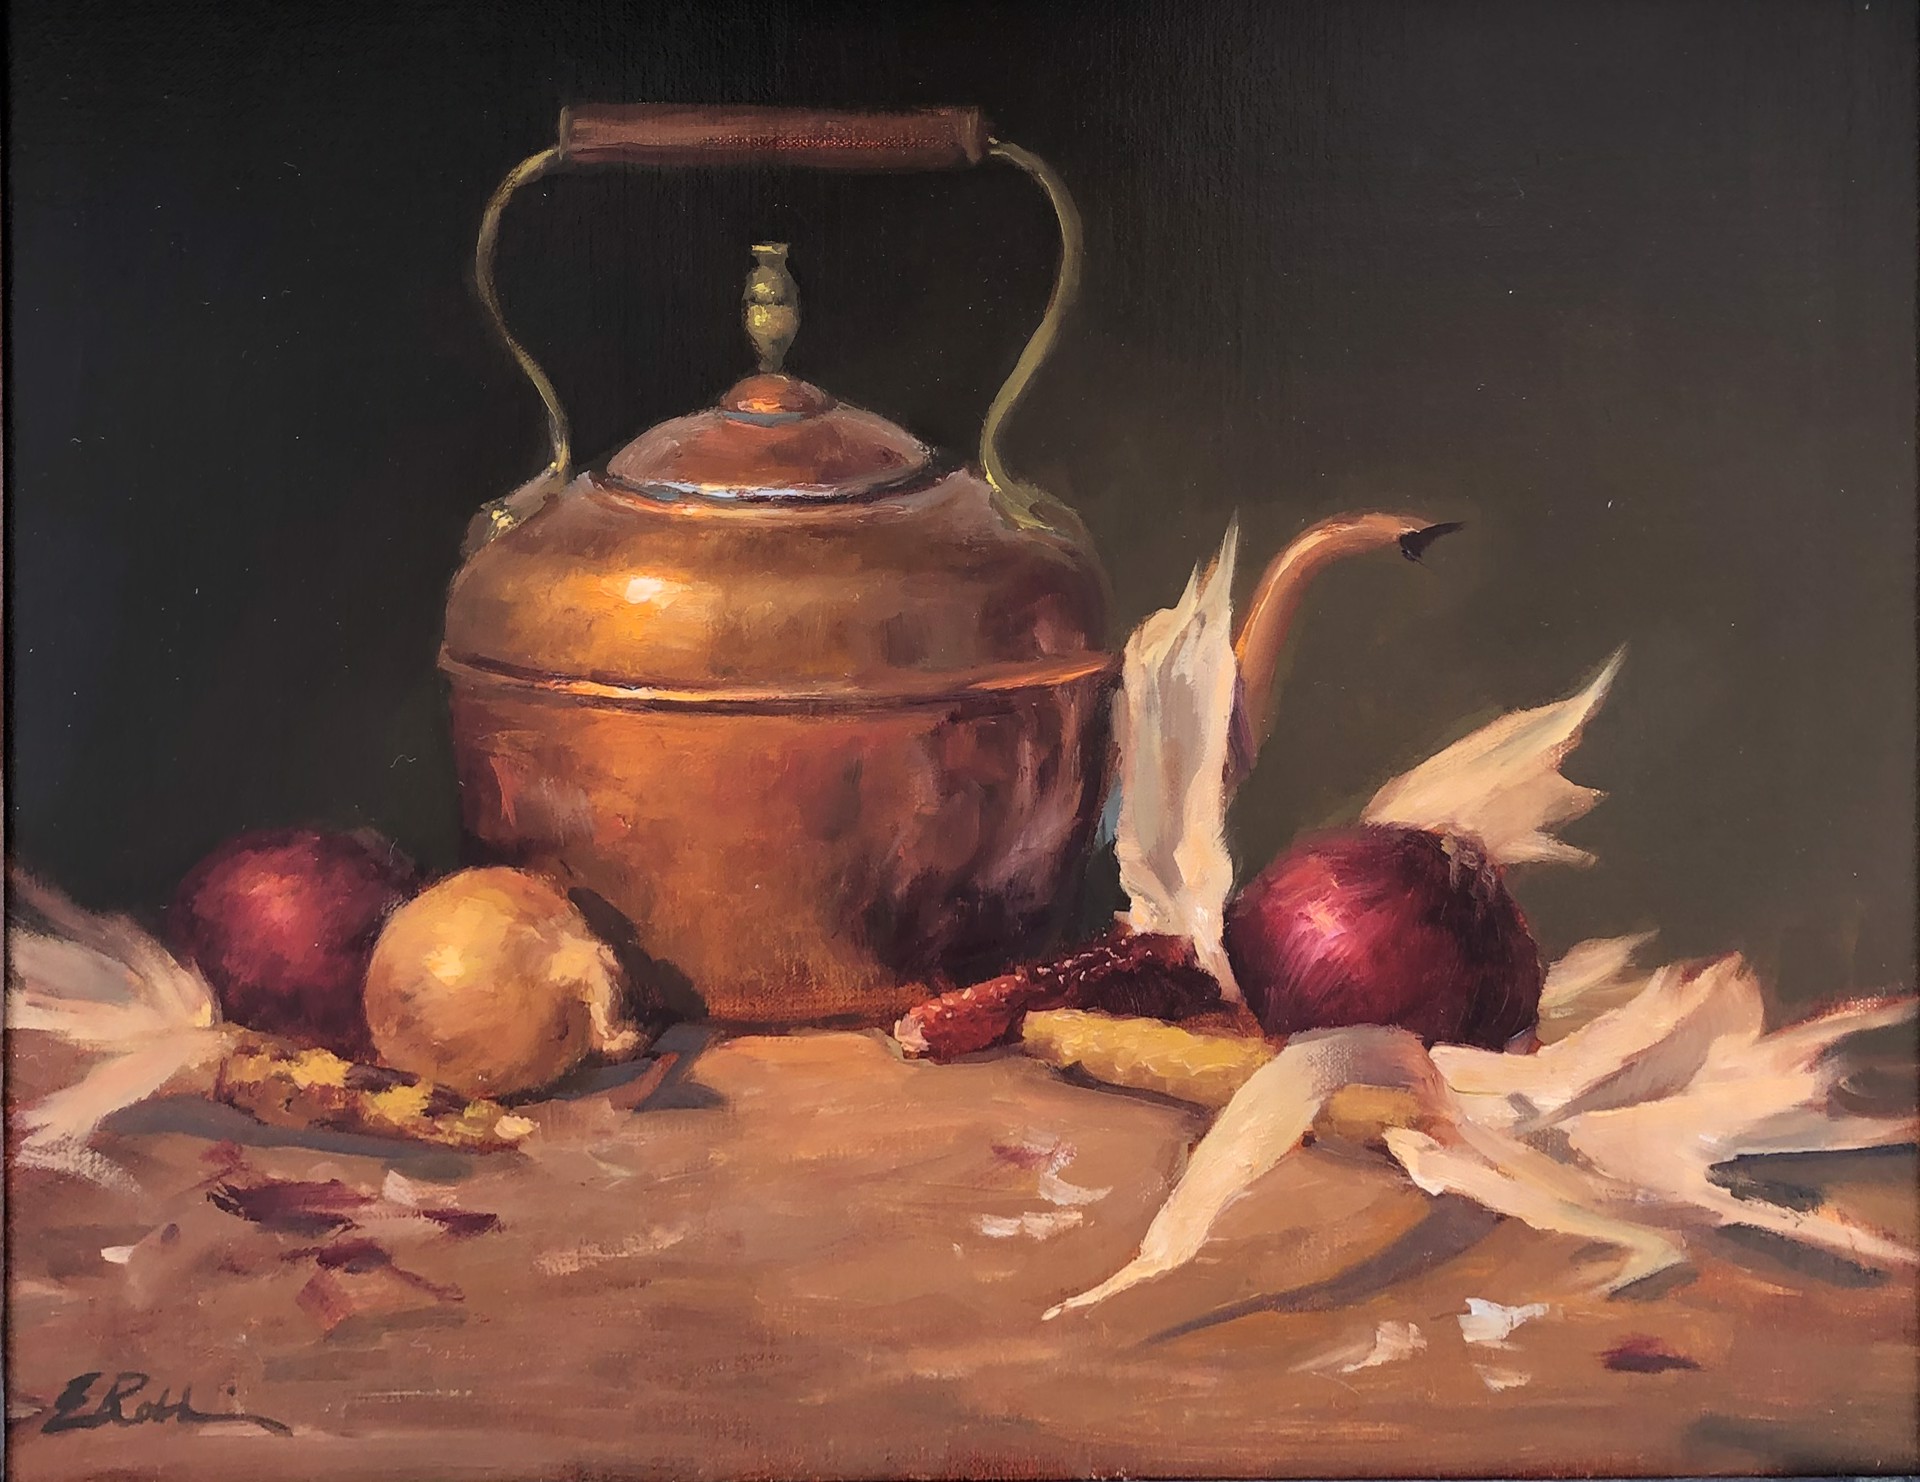 Copper and Onions by Elizabeth Robbins